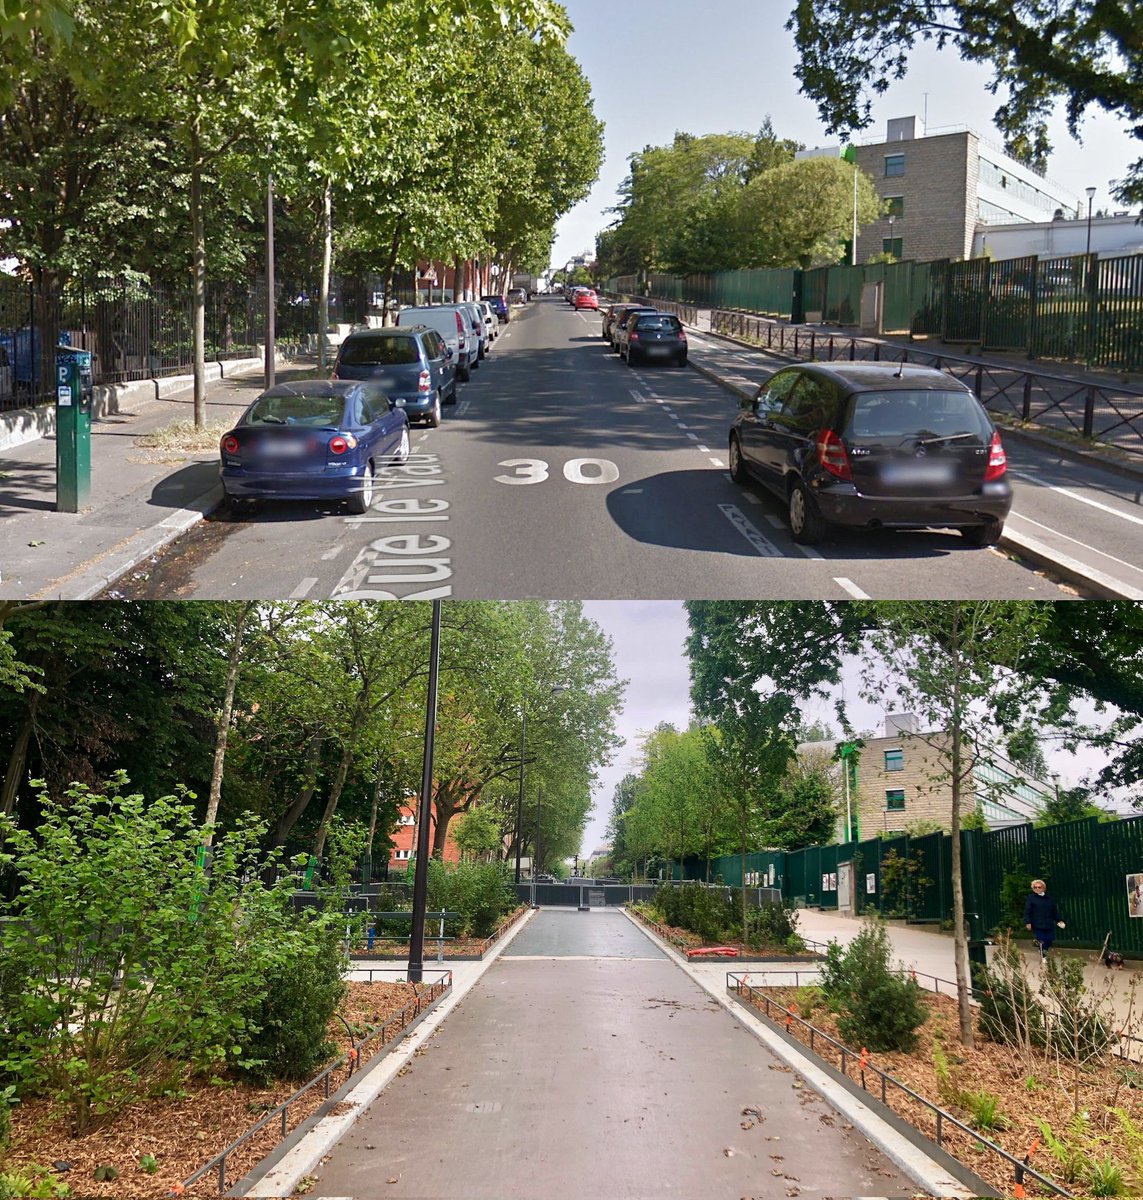 Otra nueva calle escolar en París (van más de 200): adiós bandas de aparcamiento, carril de circulación general y vallas para enjaular niños. 📷 @EmmanuelSPV